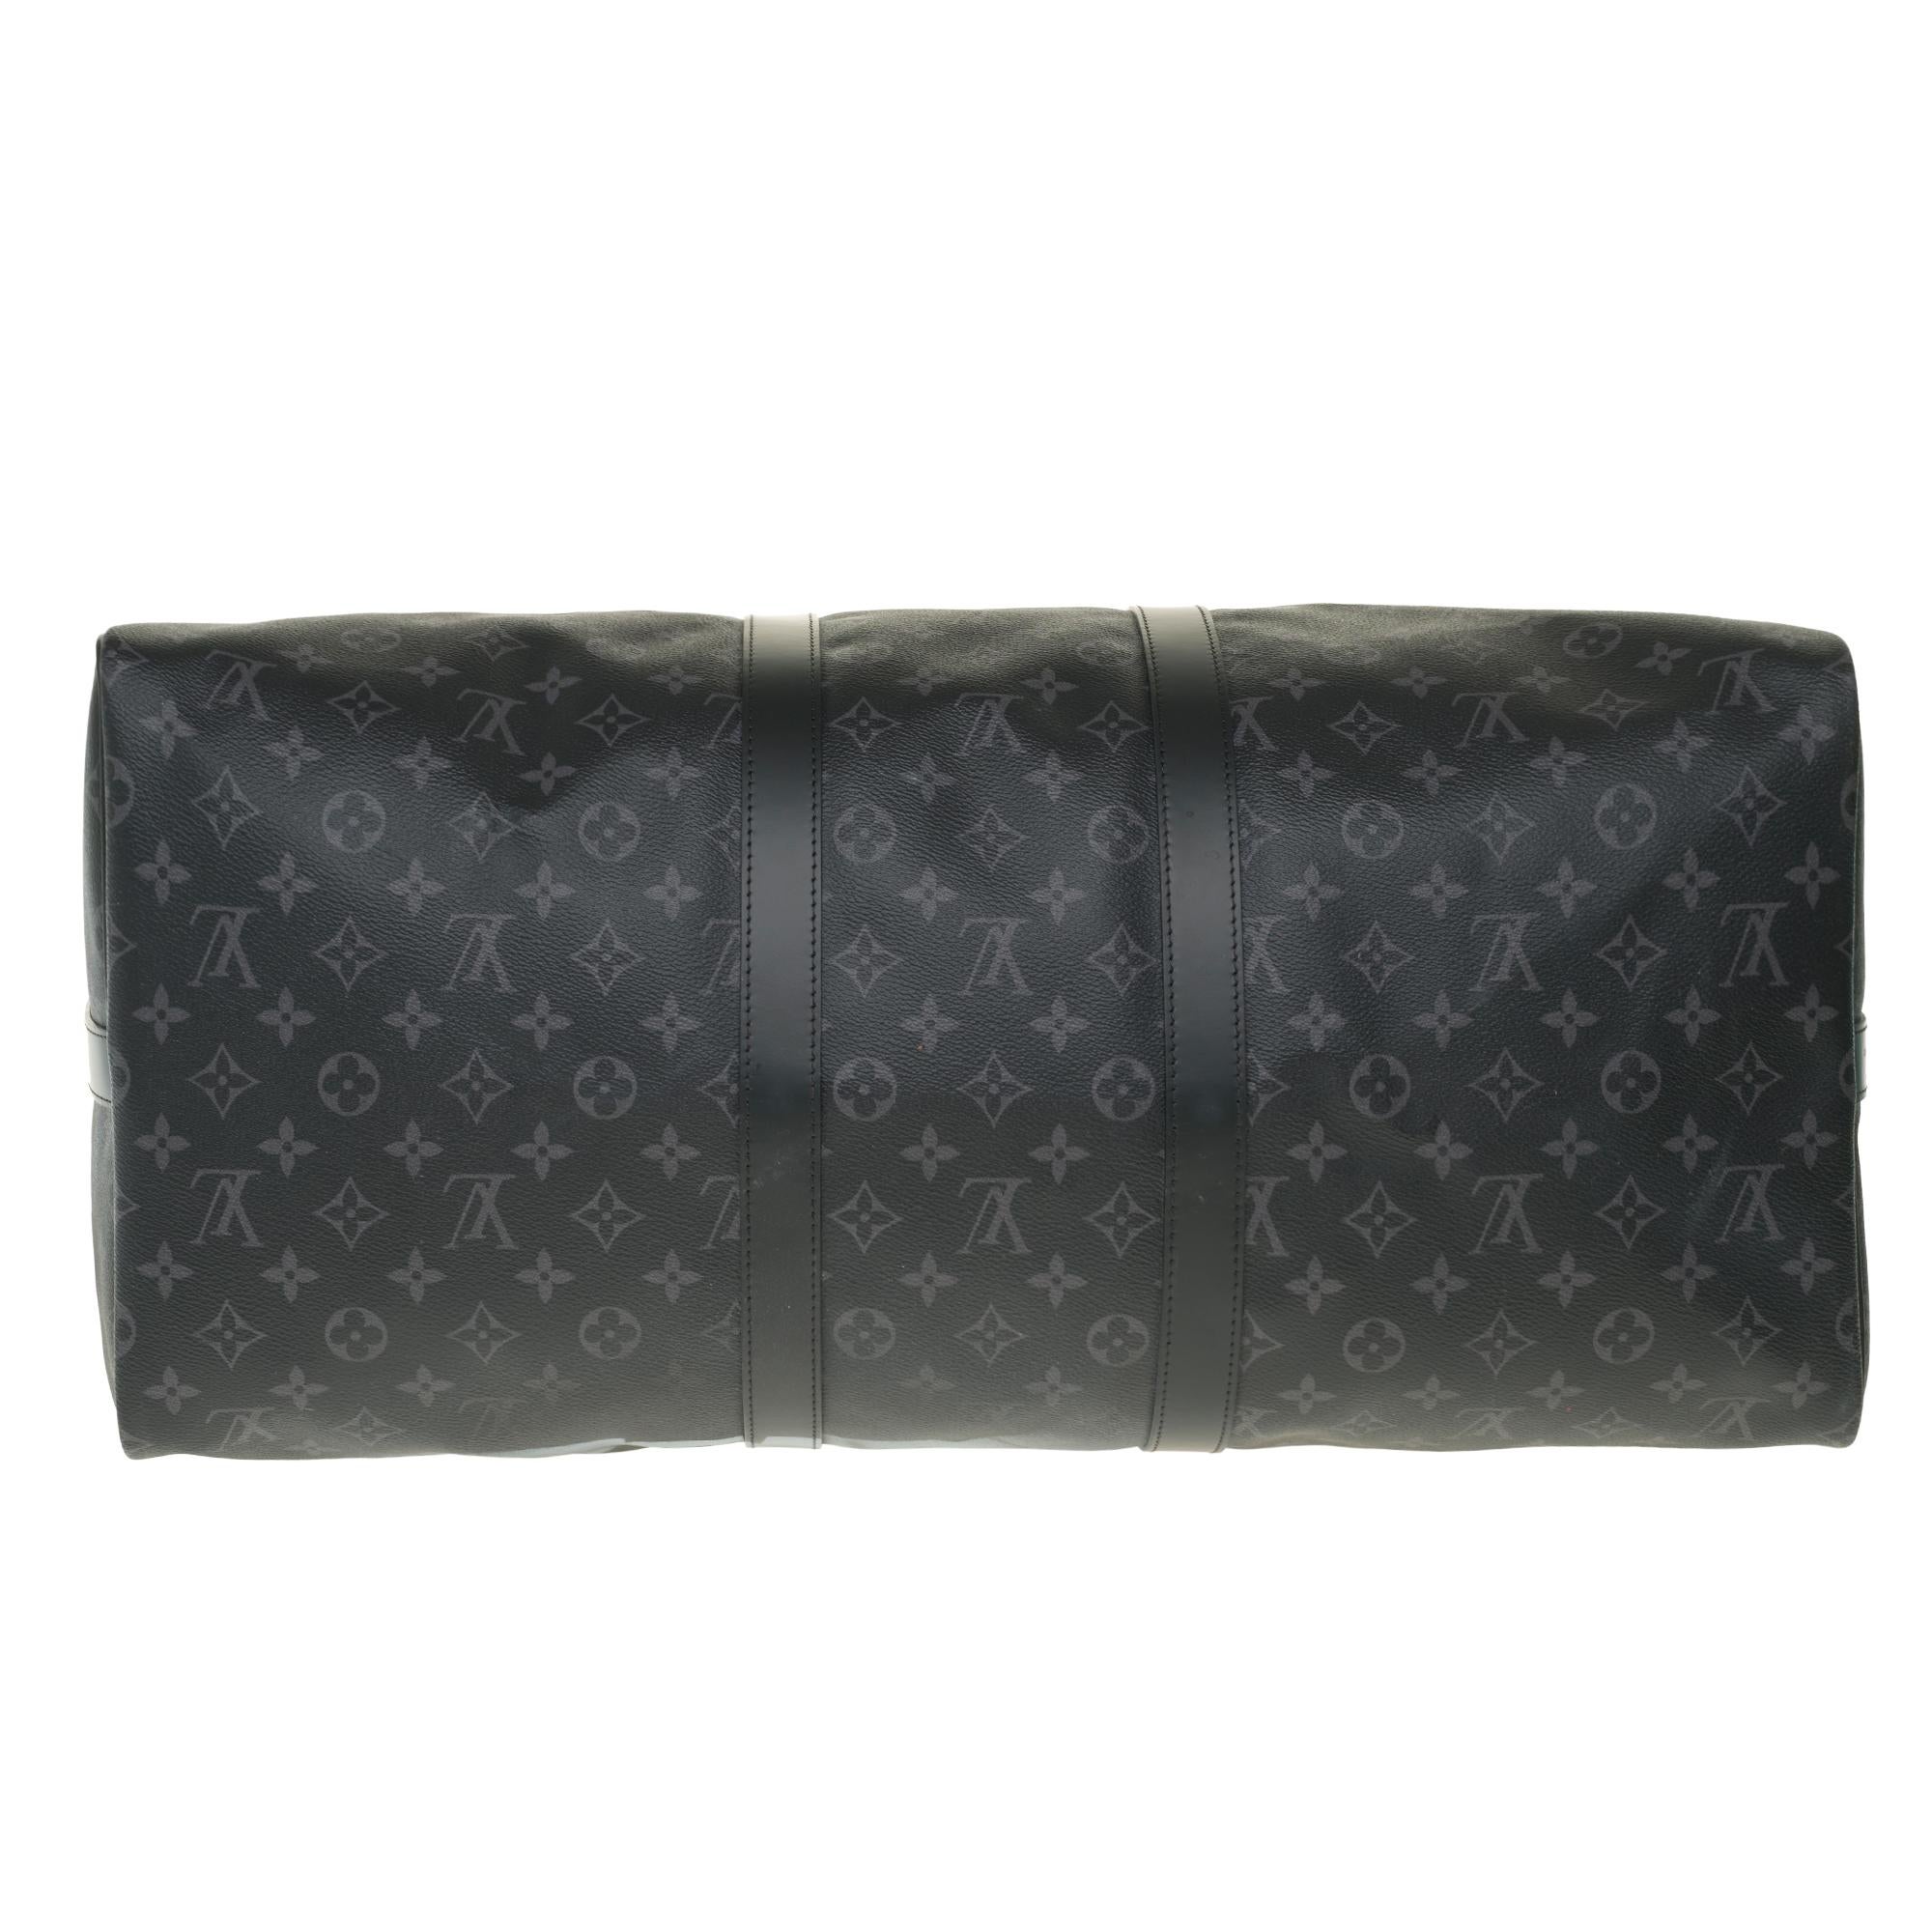 UNIQUE Customized BATBAG III Travel bag Louis Vuitton Keepall 55 éclipse strap 3